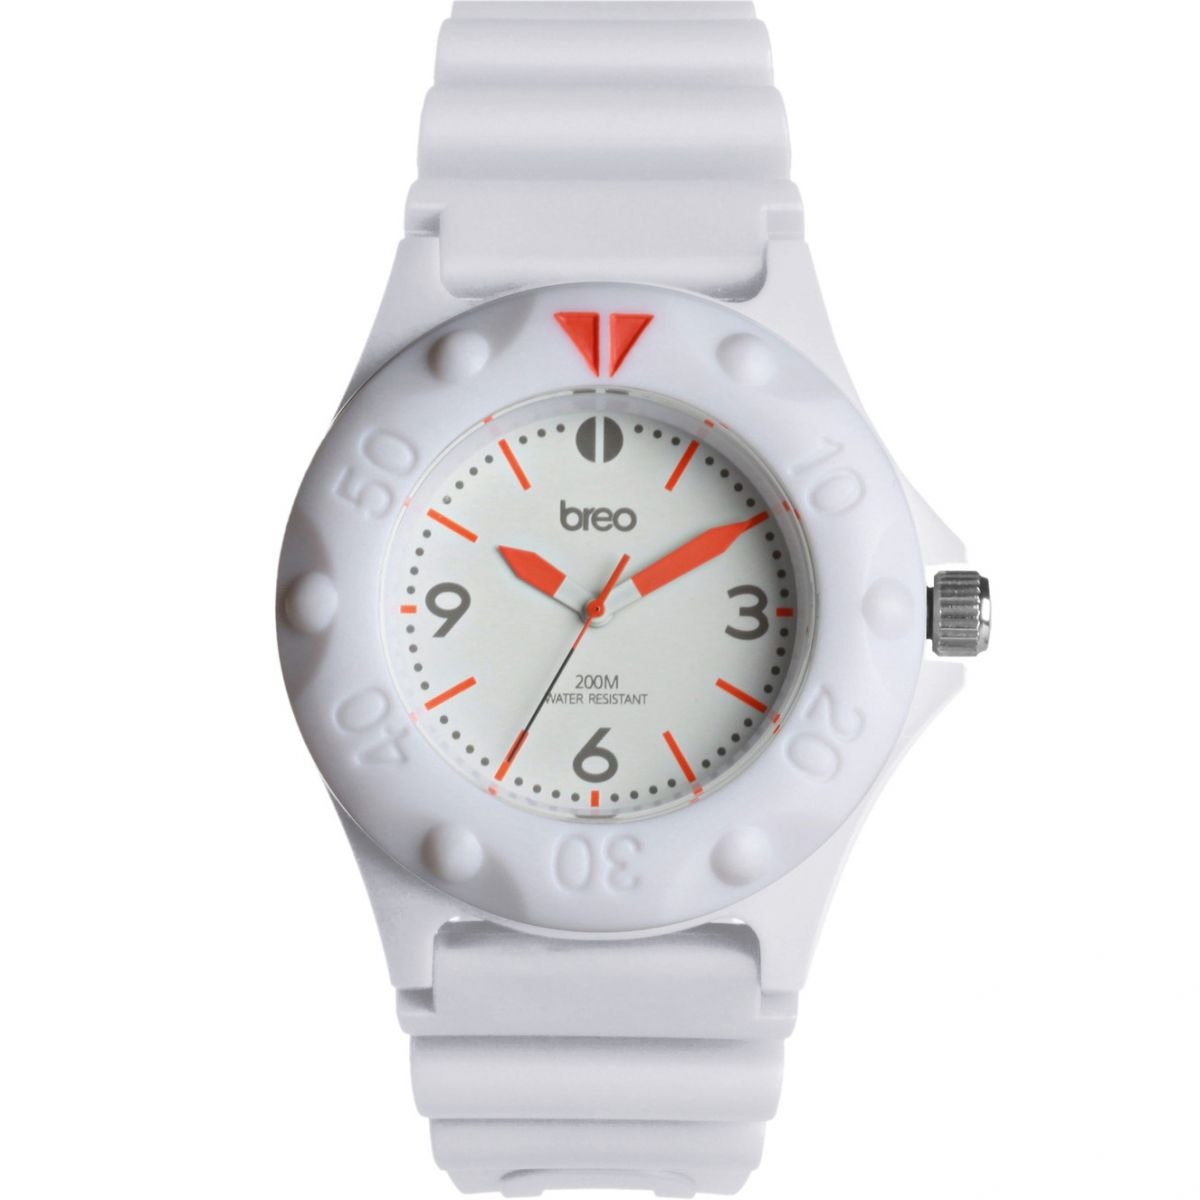 Watch Shop - Men's Watch in White - Breo GOOFASH